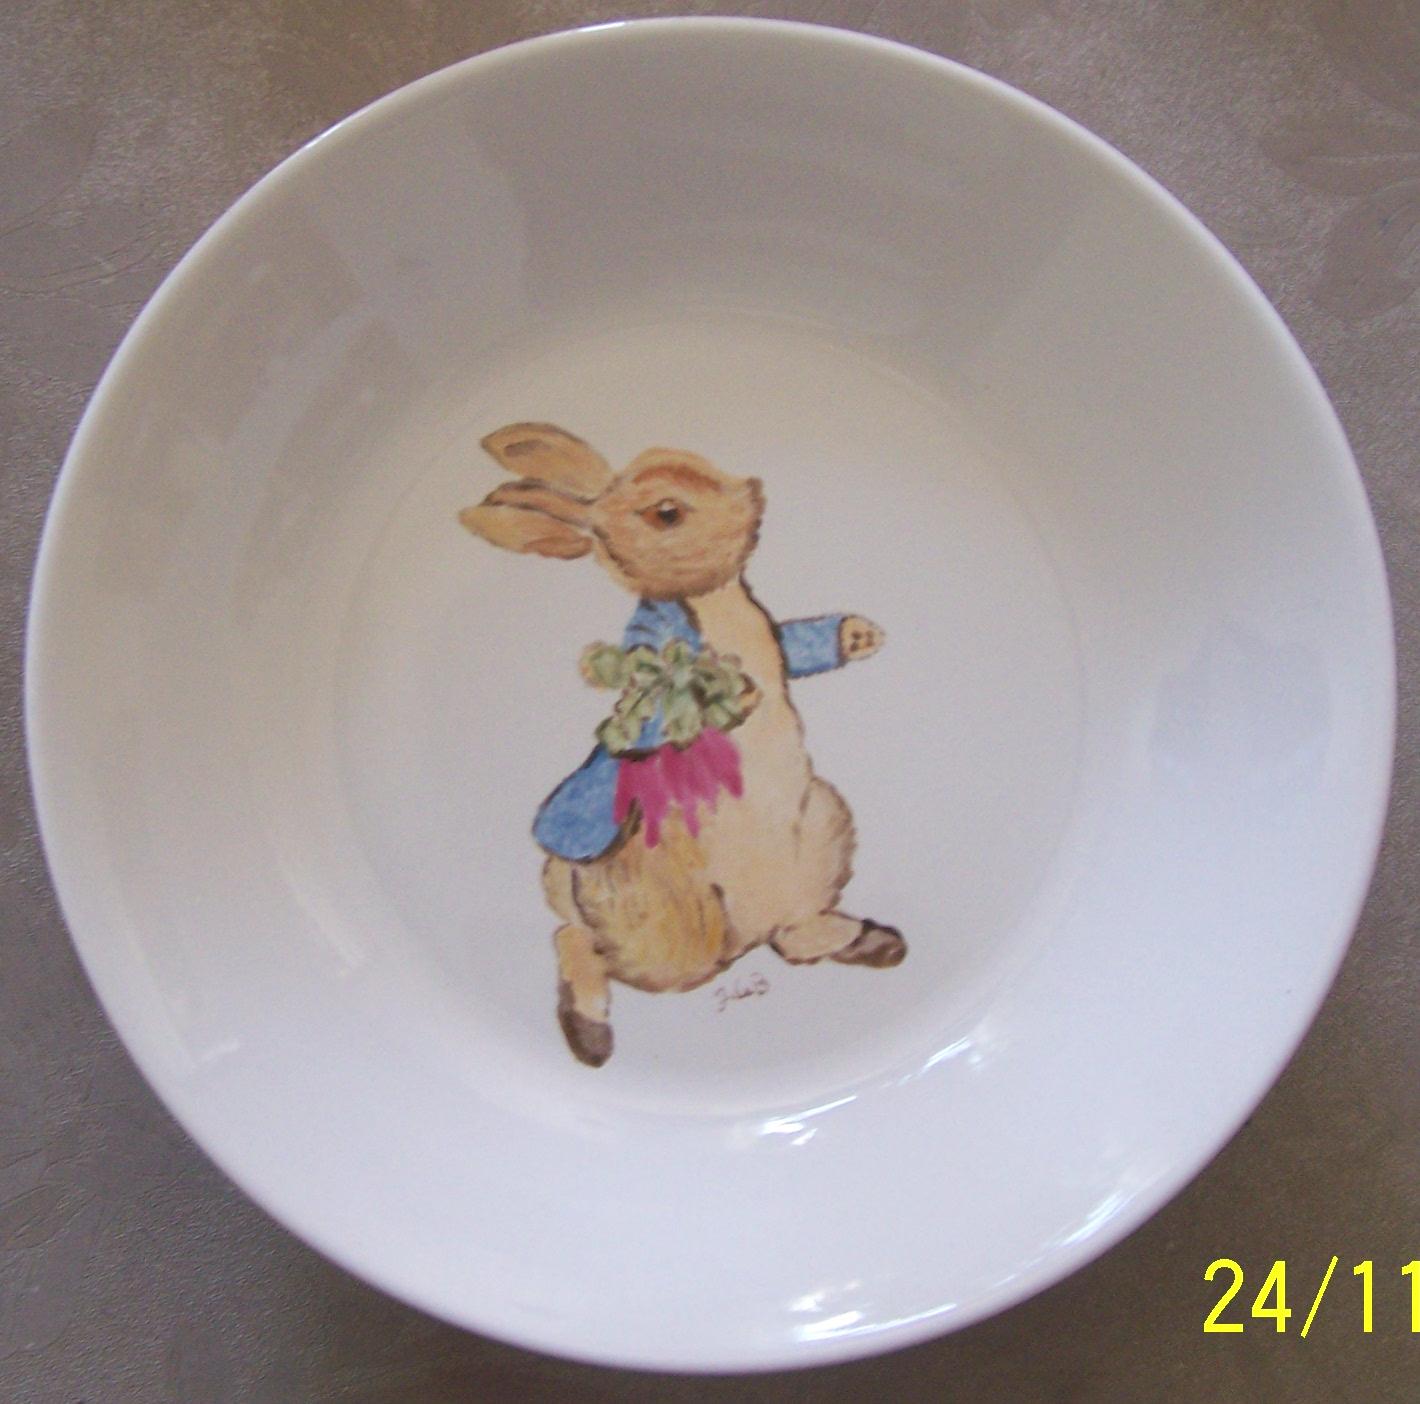 Decoluc-peintre sur porcelaine-travaux d'lves: Assiette en porcelaine peinte  la main: lapin (par JdeB)